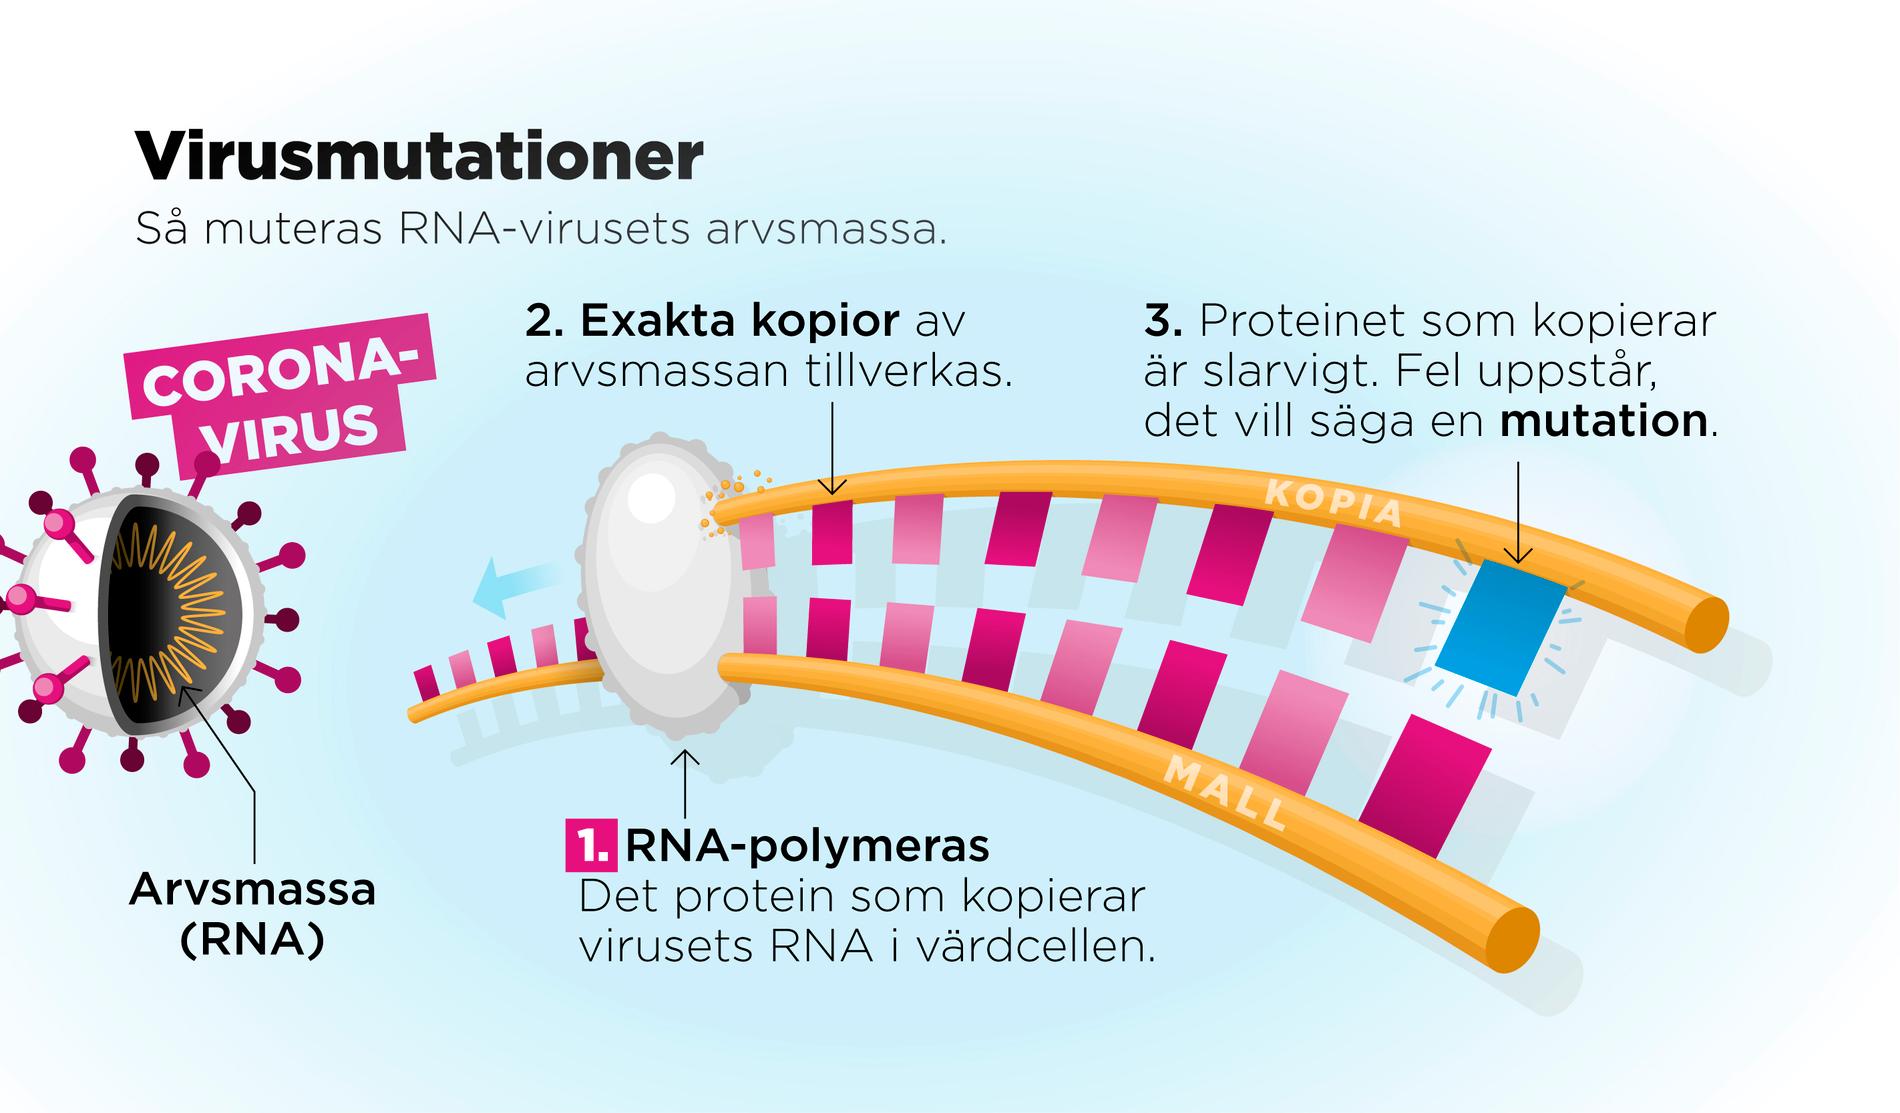 Coronaviruset är ett så kallat RNA-virus. I dessa virus består arvsmassan av RNA. När virusets protein misslyckas med att kopiera arvsmassan uppstår en mutation.